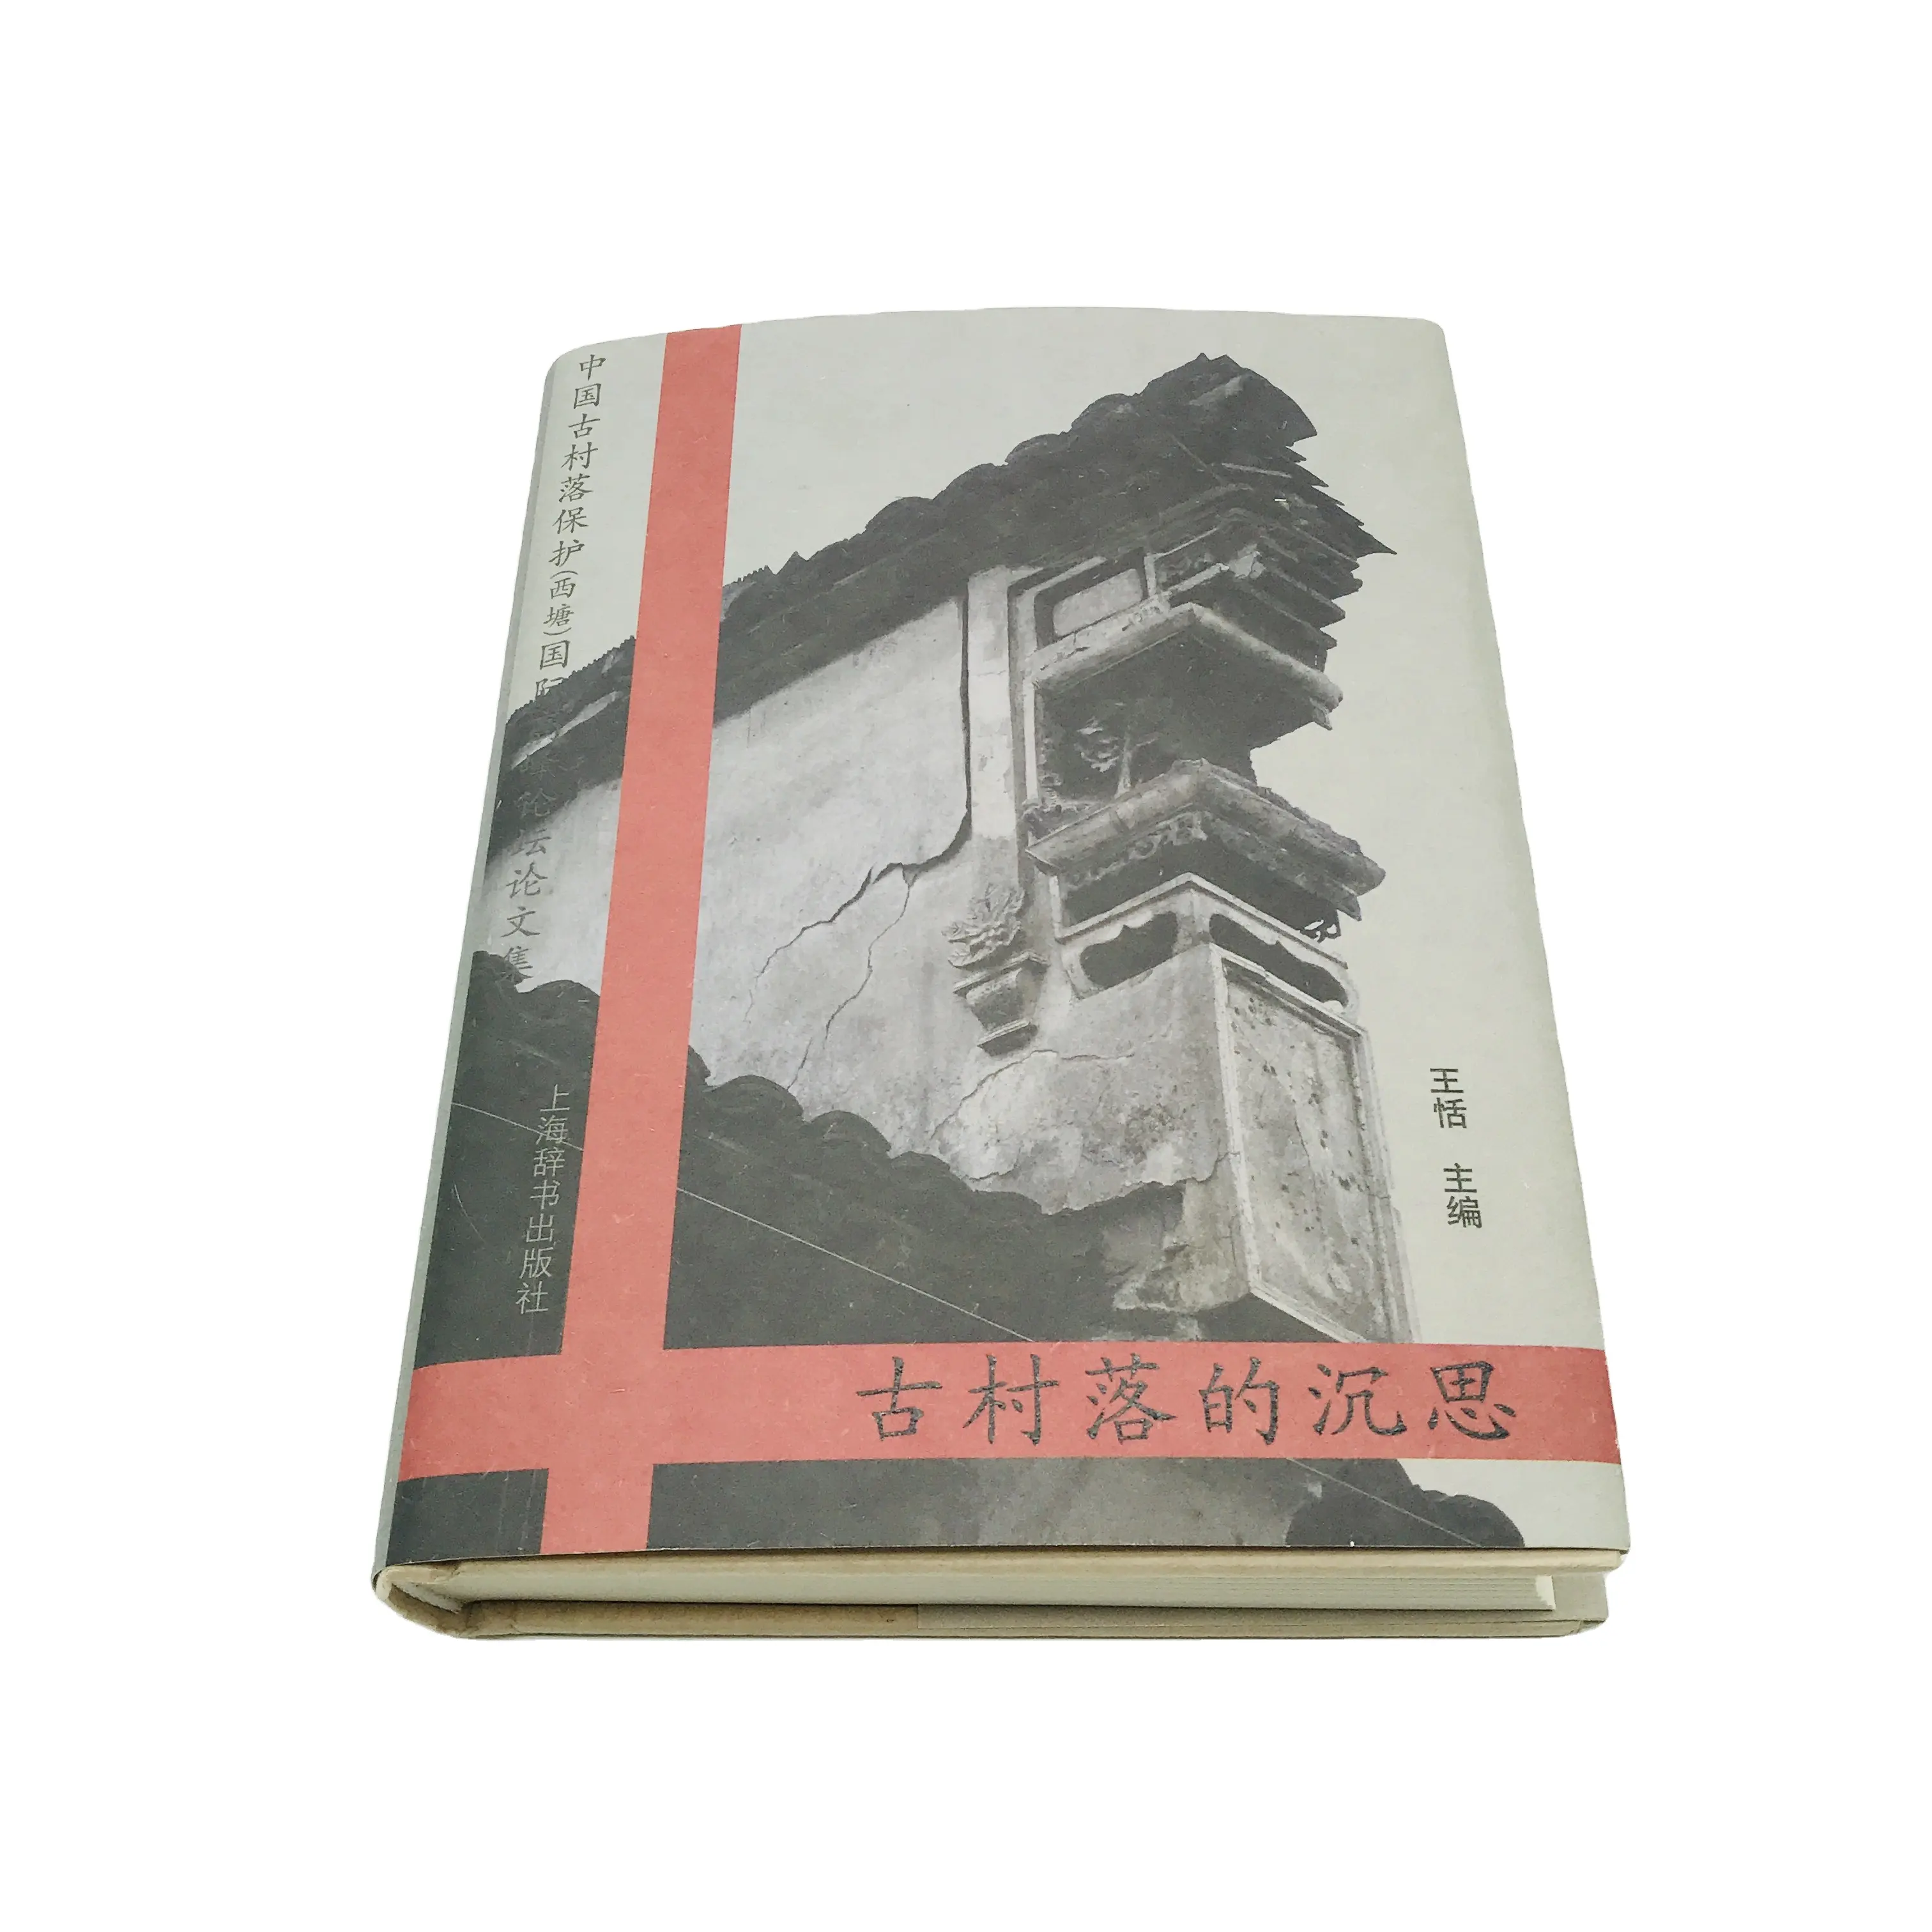 SM-JZ023-Libro de tapa dura con impresión negra, obra de arte de la cultura folclórica